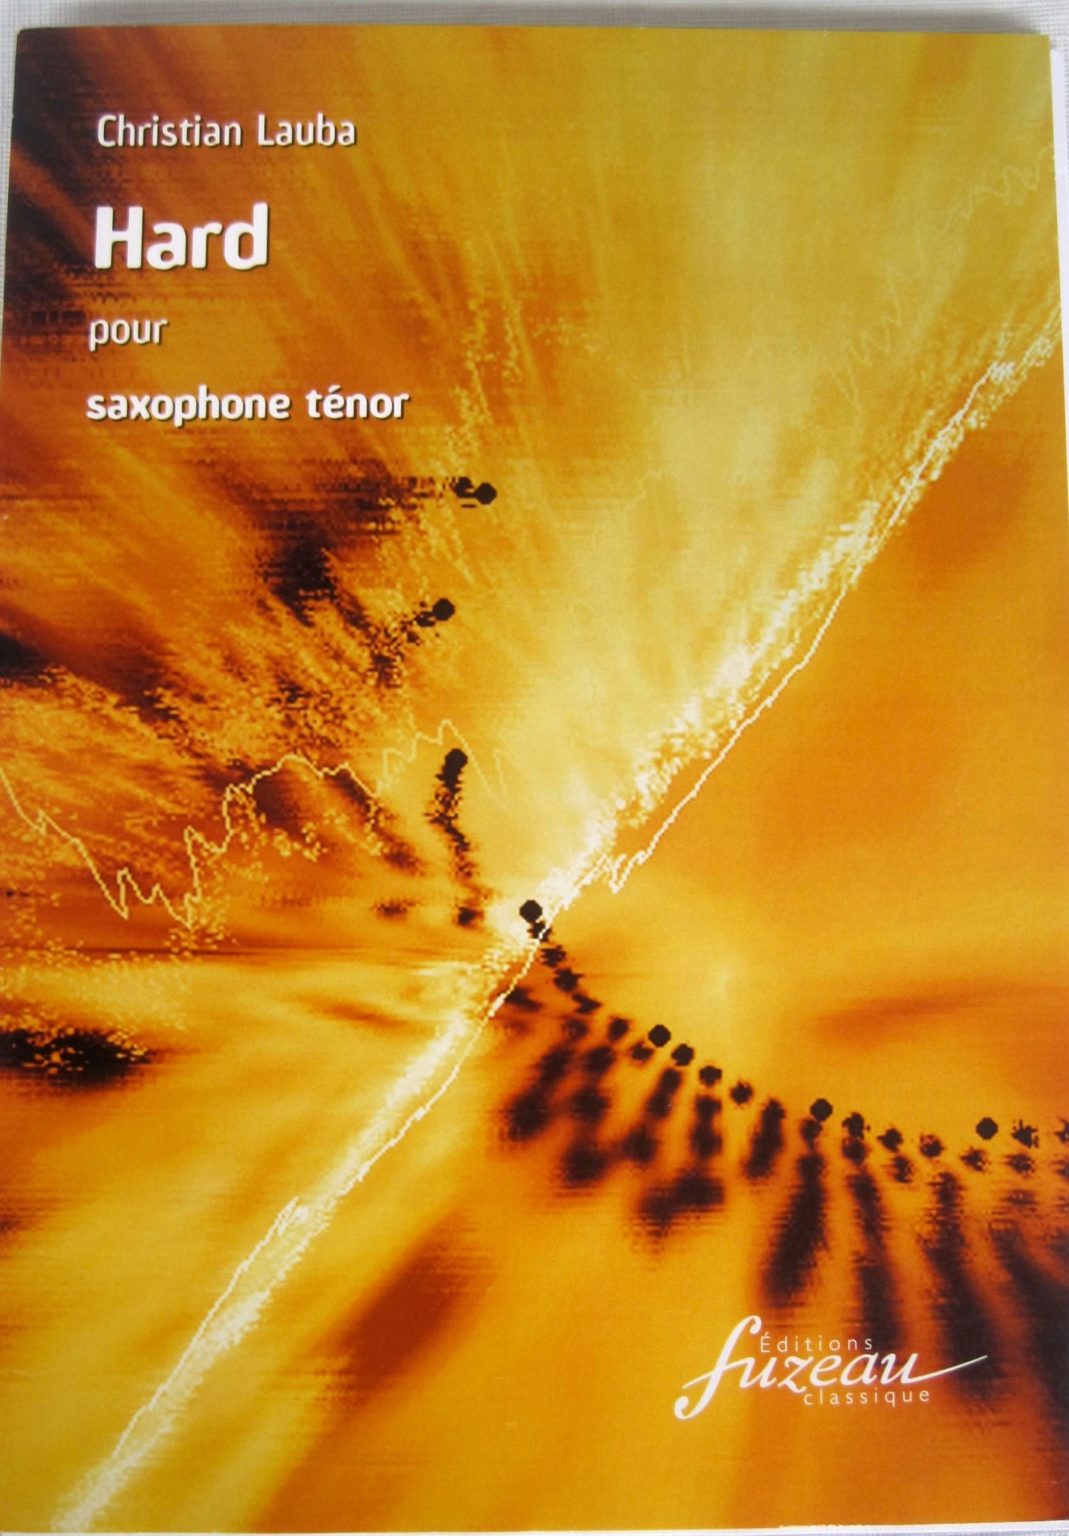 Hard (1988) para saxofón tenor solo. Christian Lauba